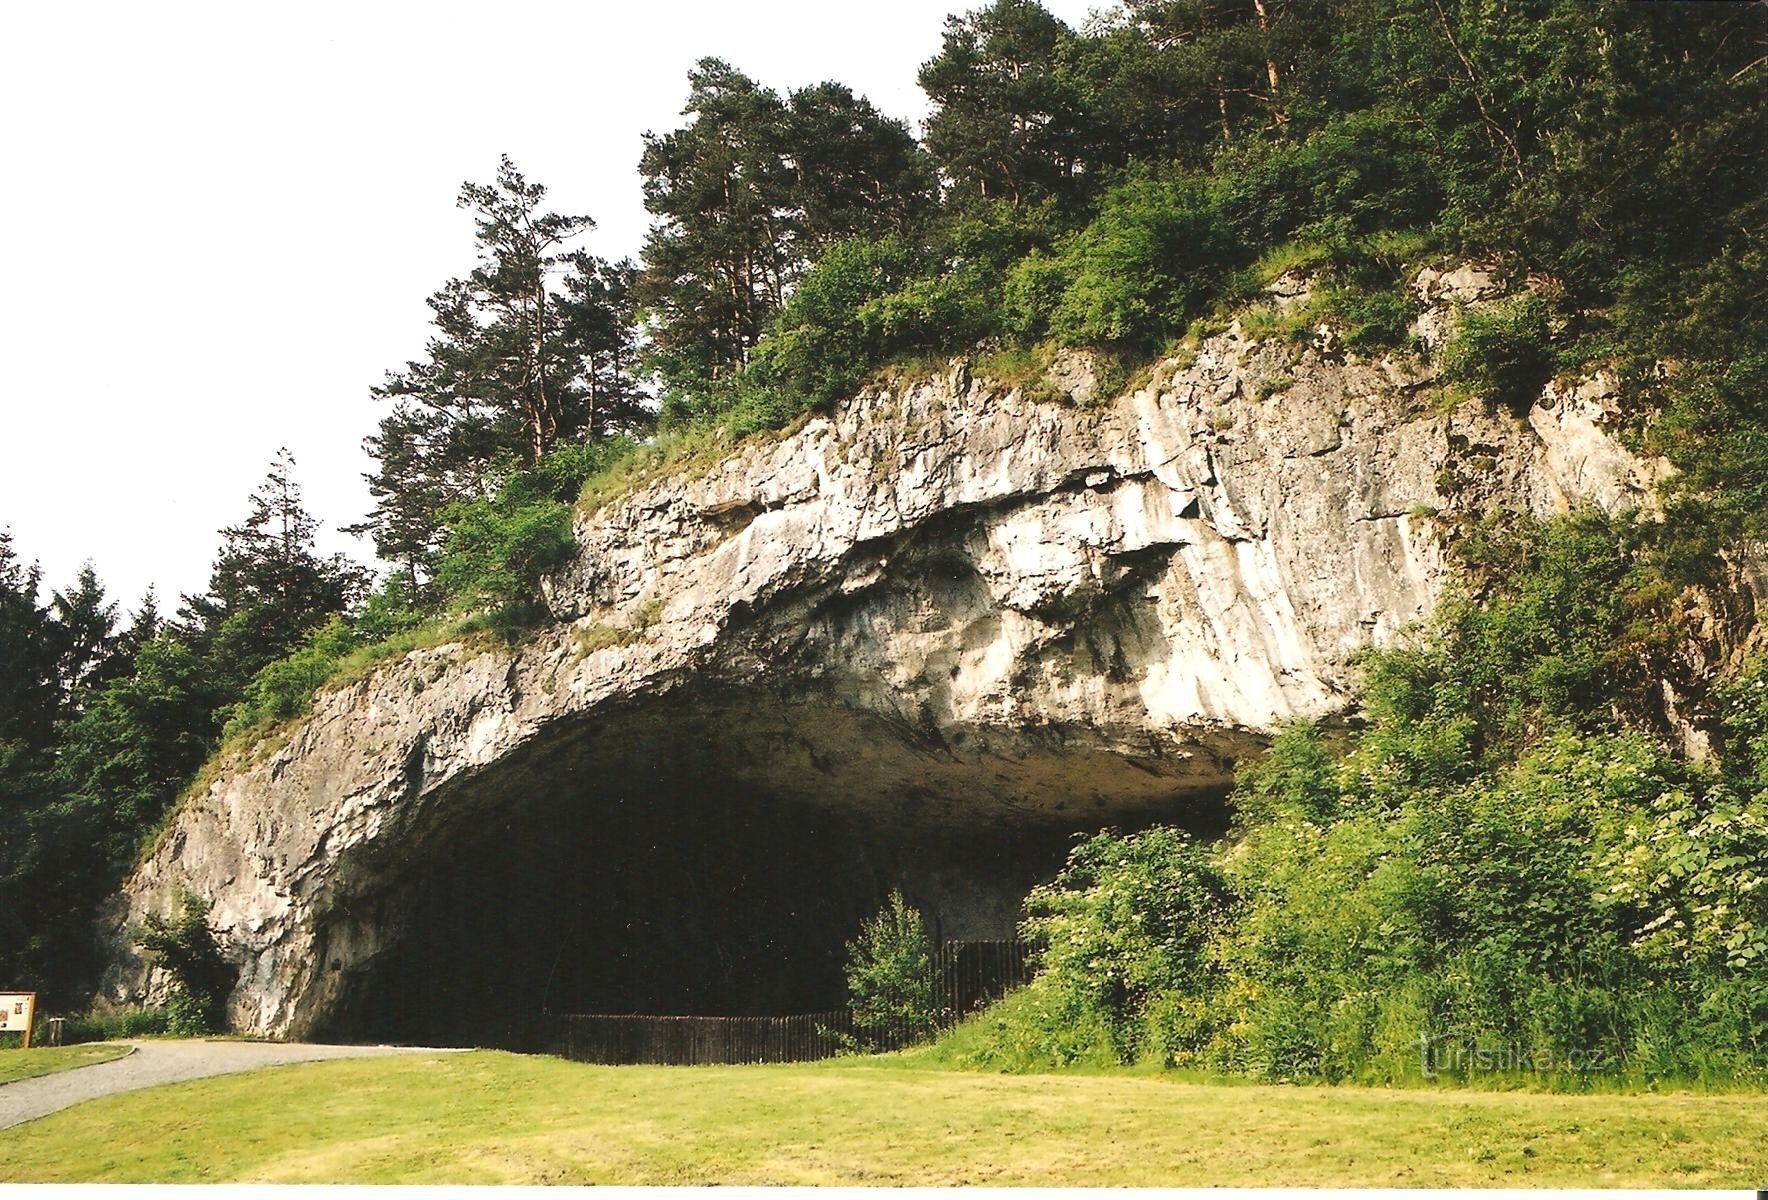 Galpão da Caverna